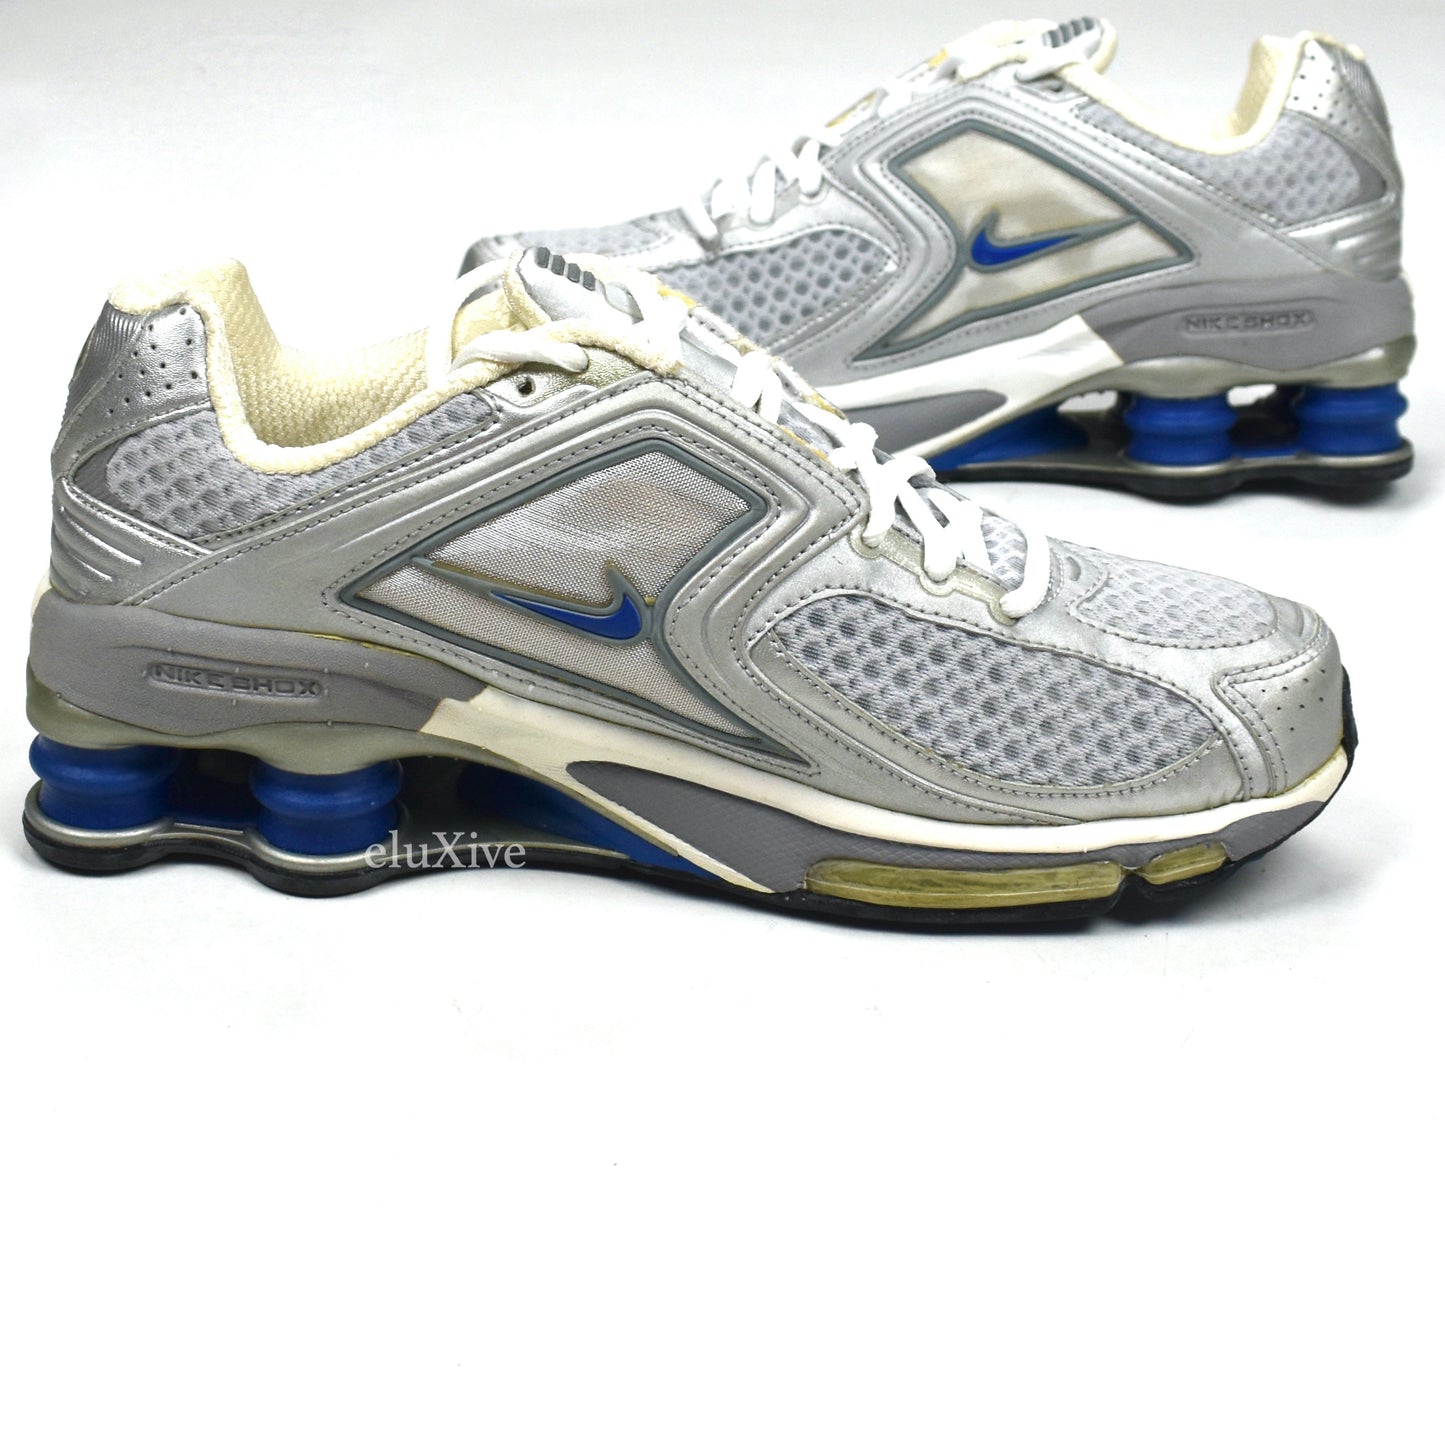 Nike - Shox International Silver / Varsity Royal Blue (2003 Sample)